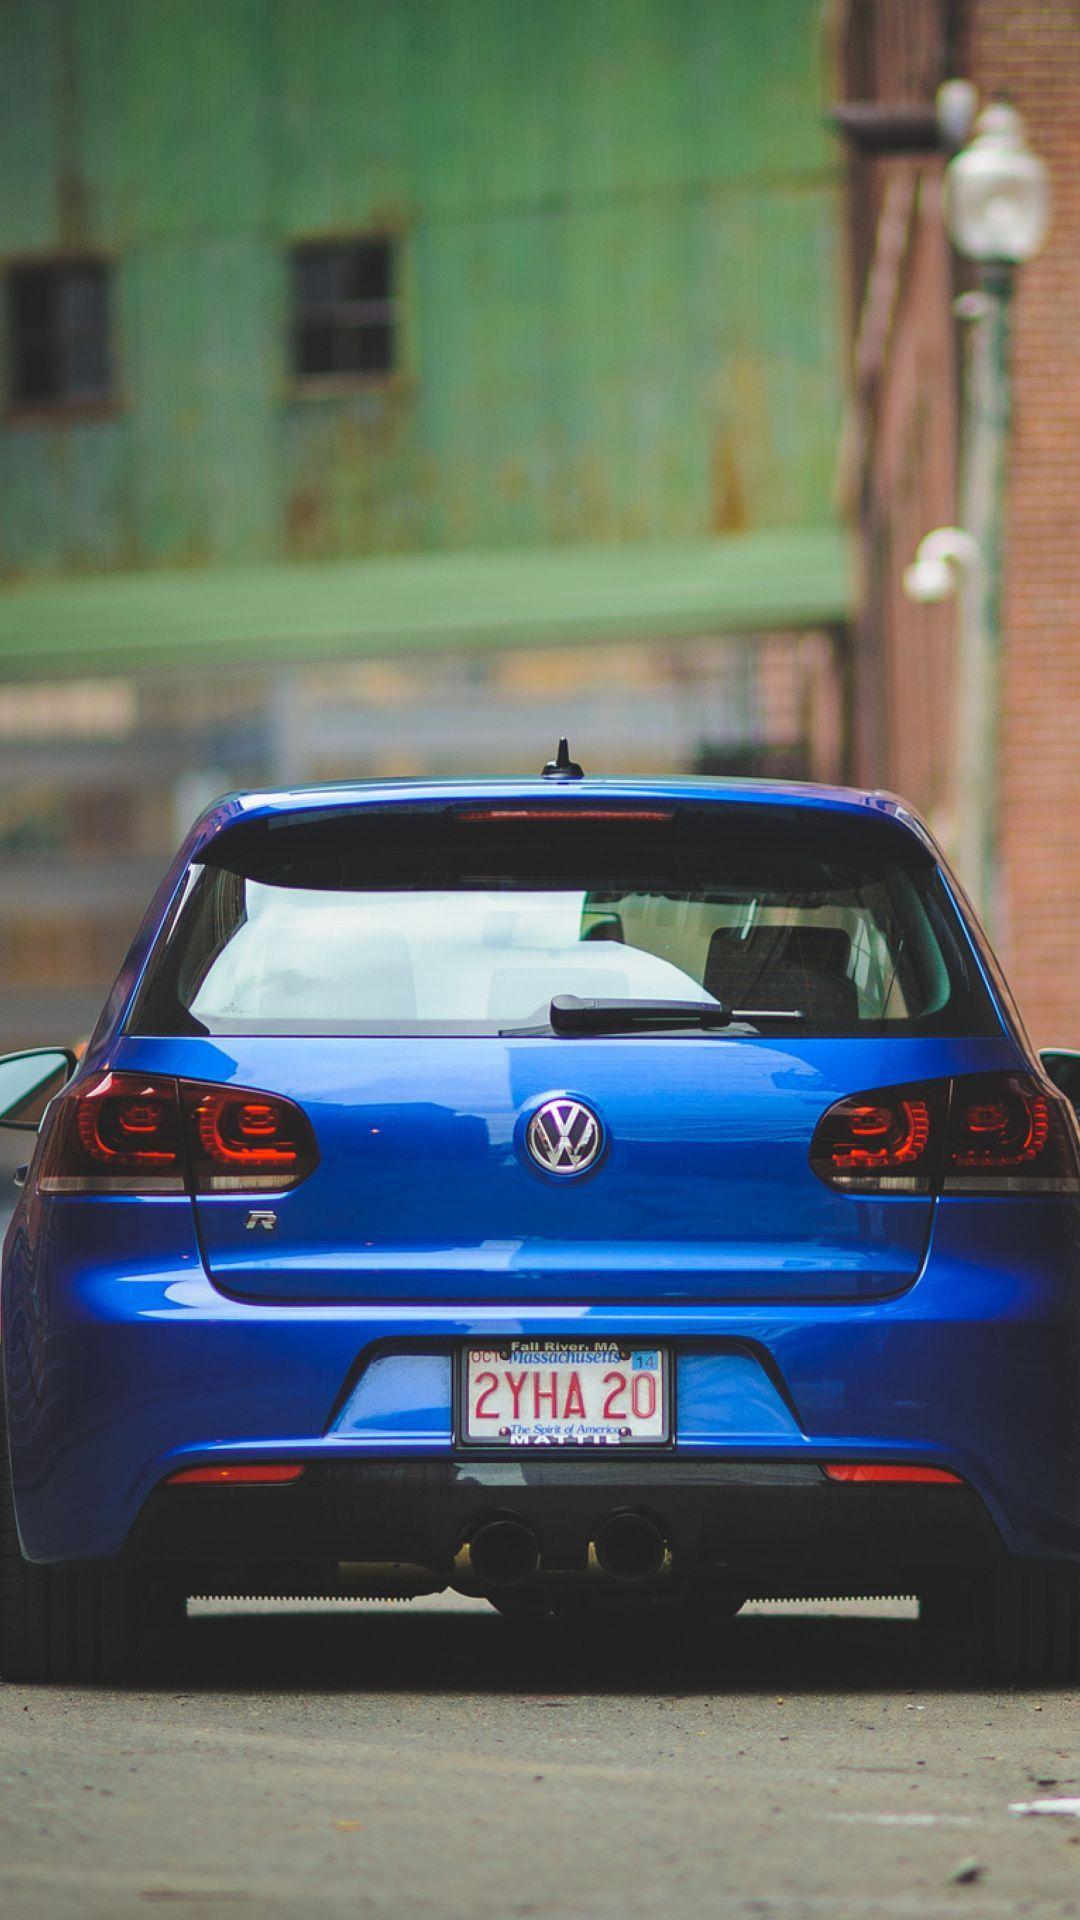 Volkswagen Golf R Wallpaper for iPhone 6 Plus. Image Wallpaper